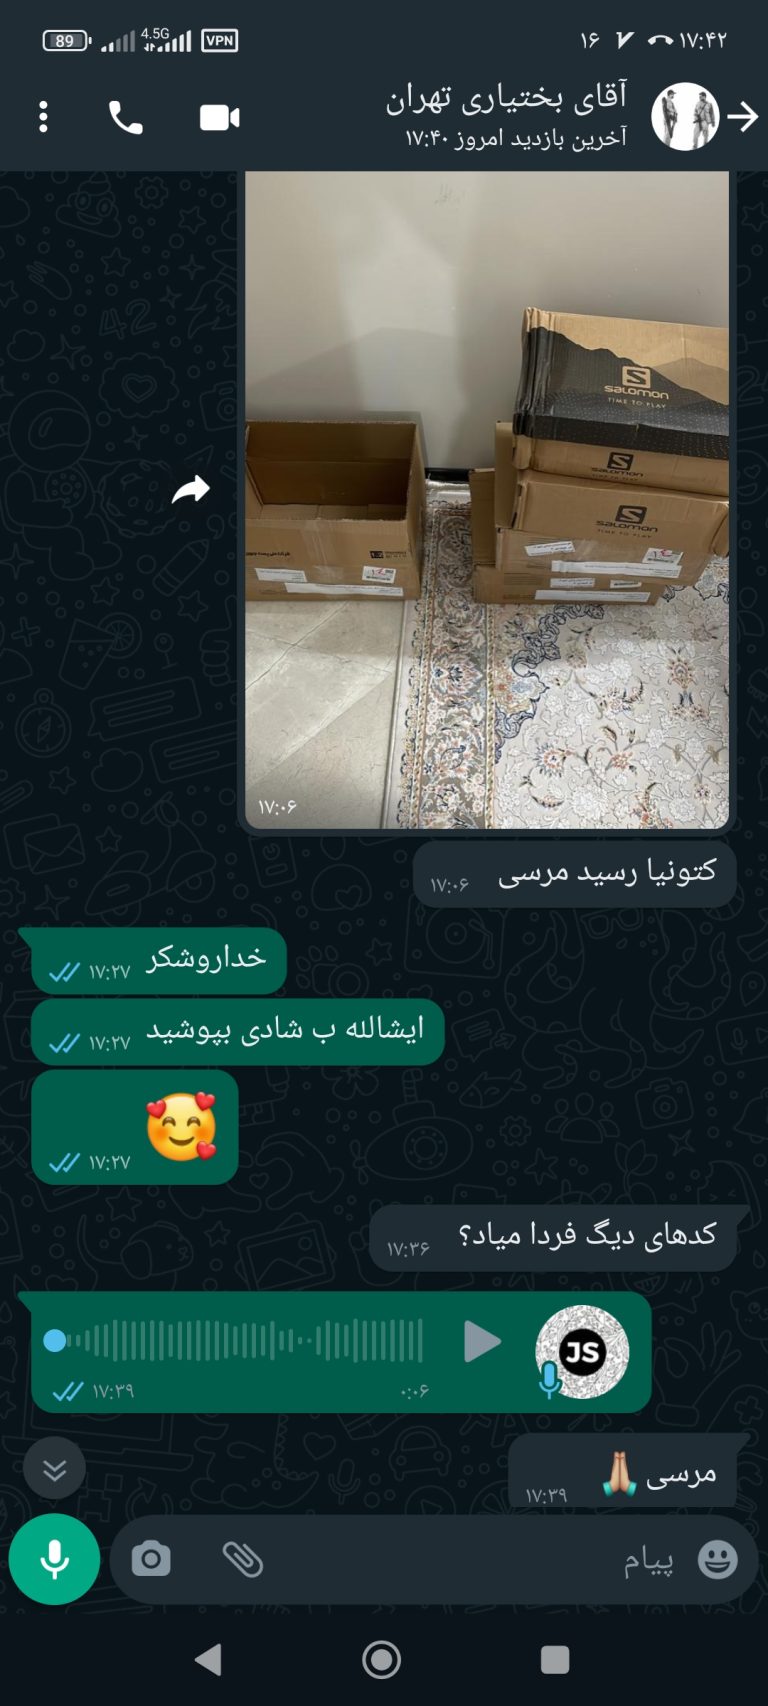 رضایت مشتری خوبمون از تهران